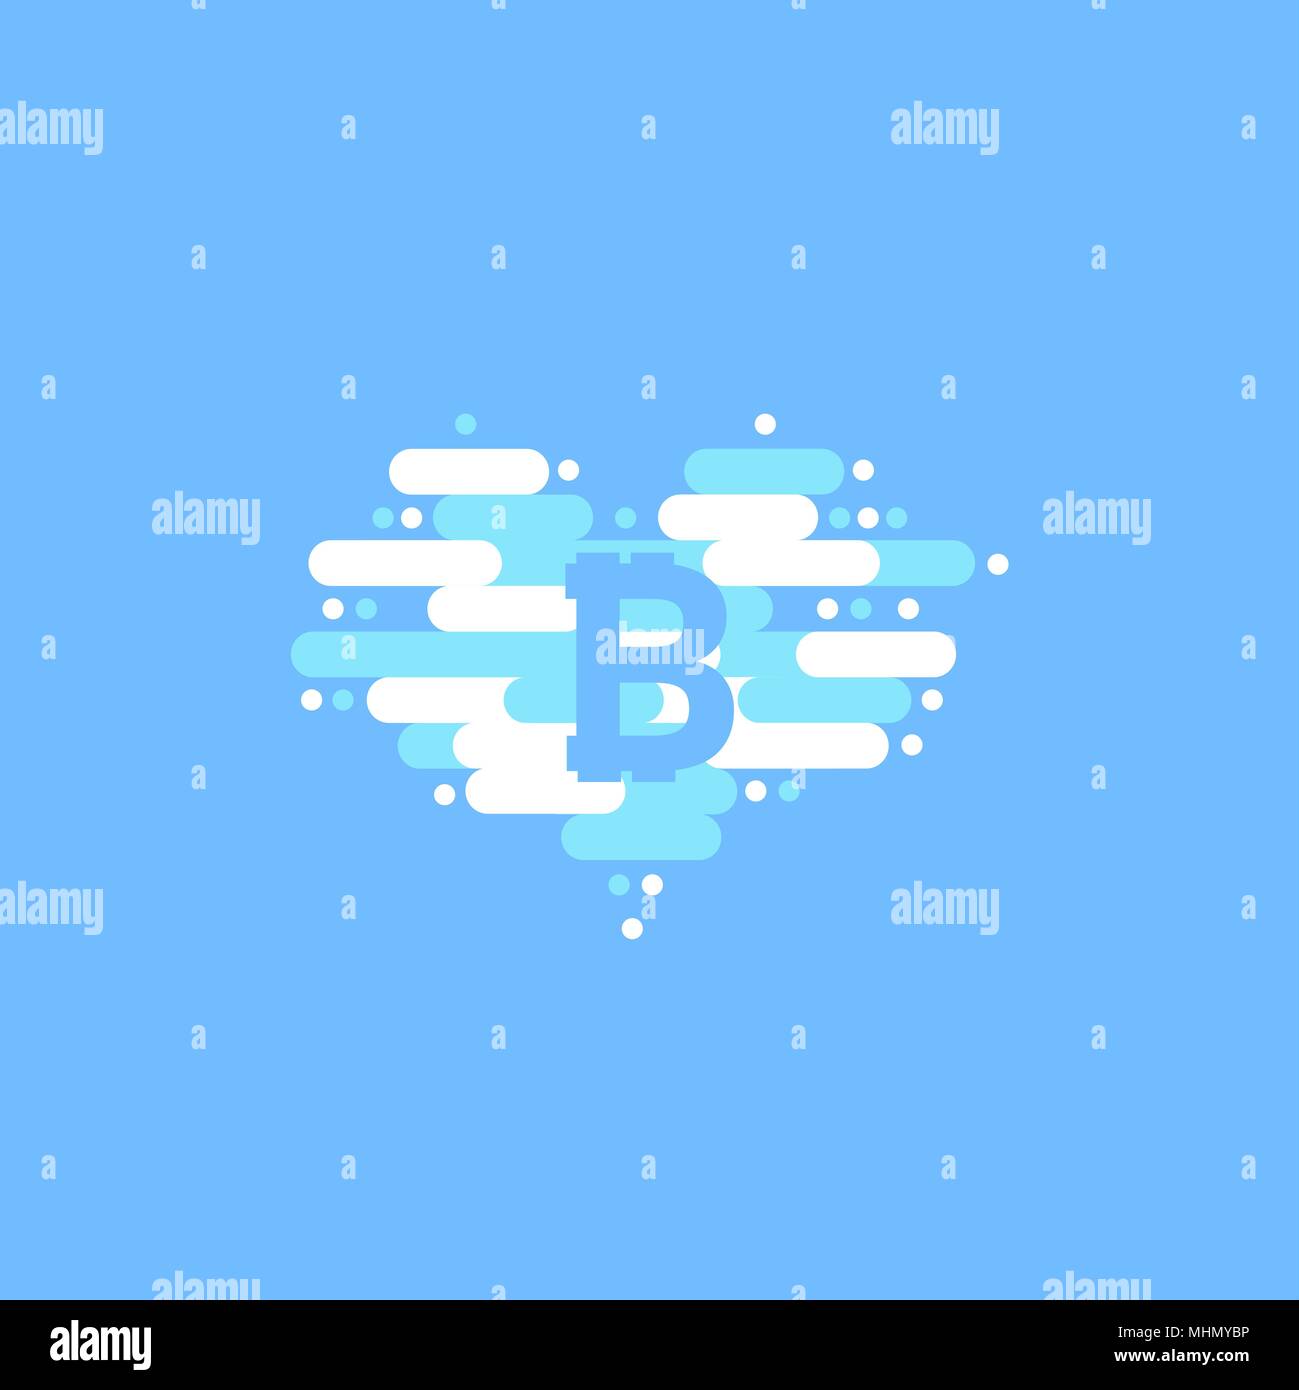 En Bitcoin nuage en forme de cœur avec l'ombre et fond de ciel bleu Illustration de Vecteur